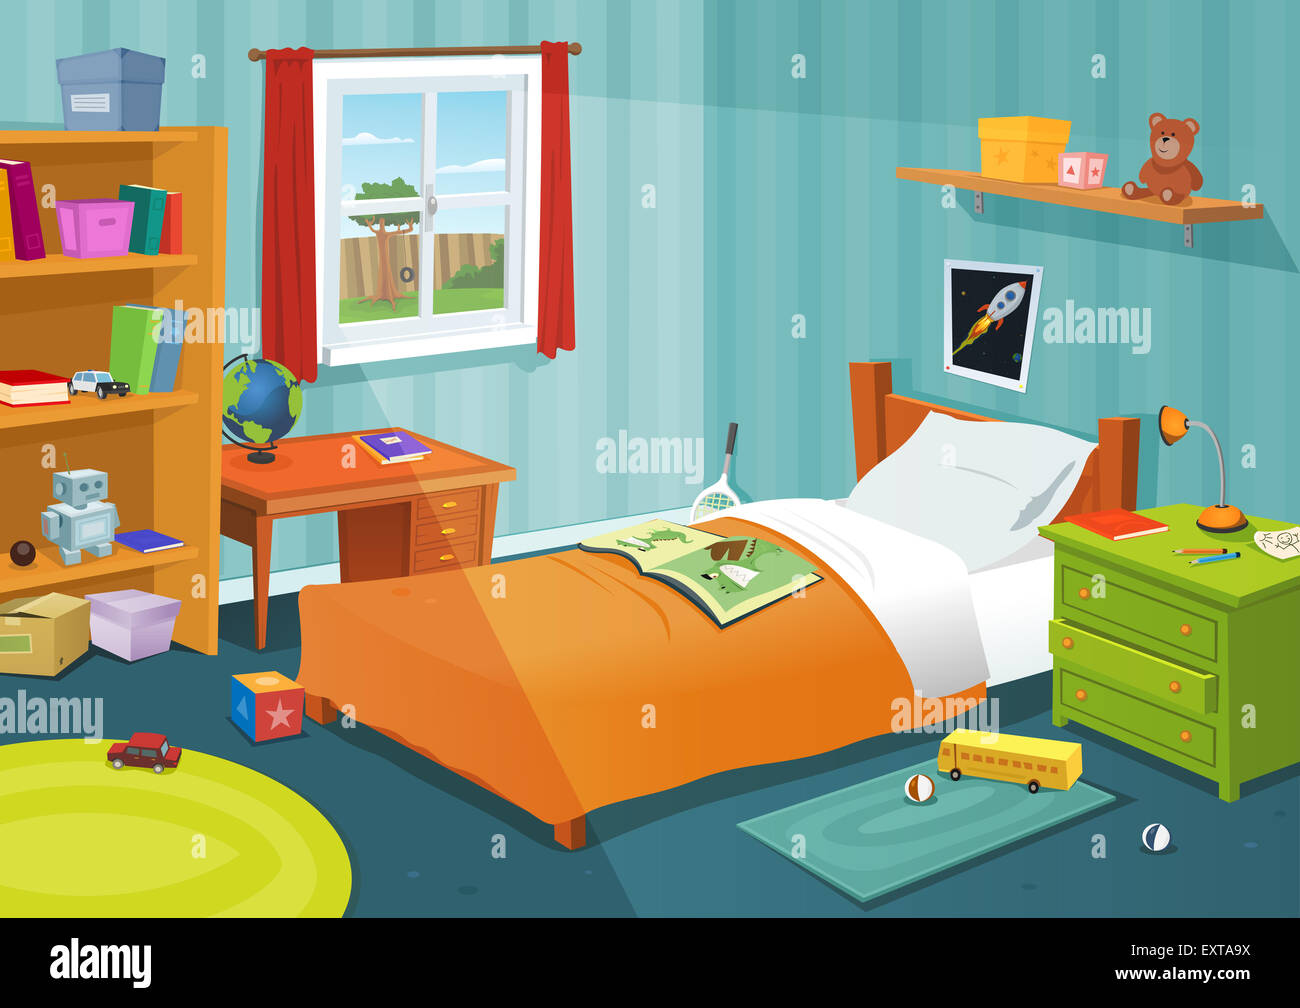 Ilustración de un dormitorio infantil de dibujos animados con el niño o la  niña elementos de estilo de vida, juguetes, libros, ropa de cama,  escritorio, estantería, Teddy bear Fotografía de stock -